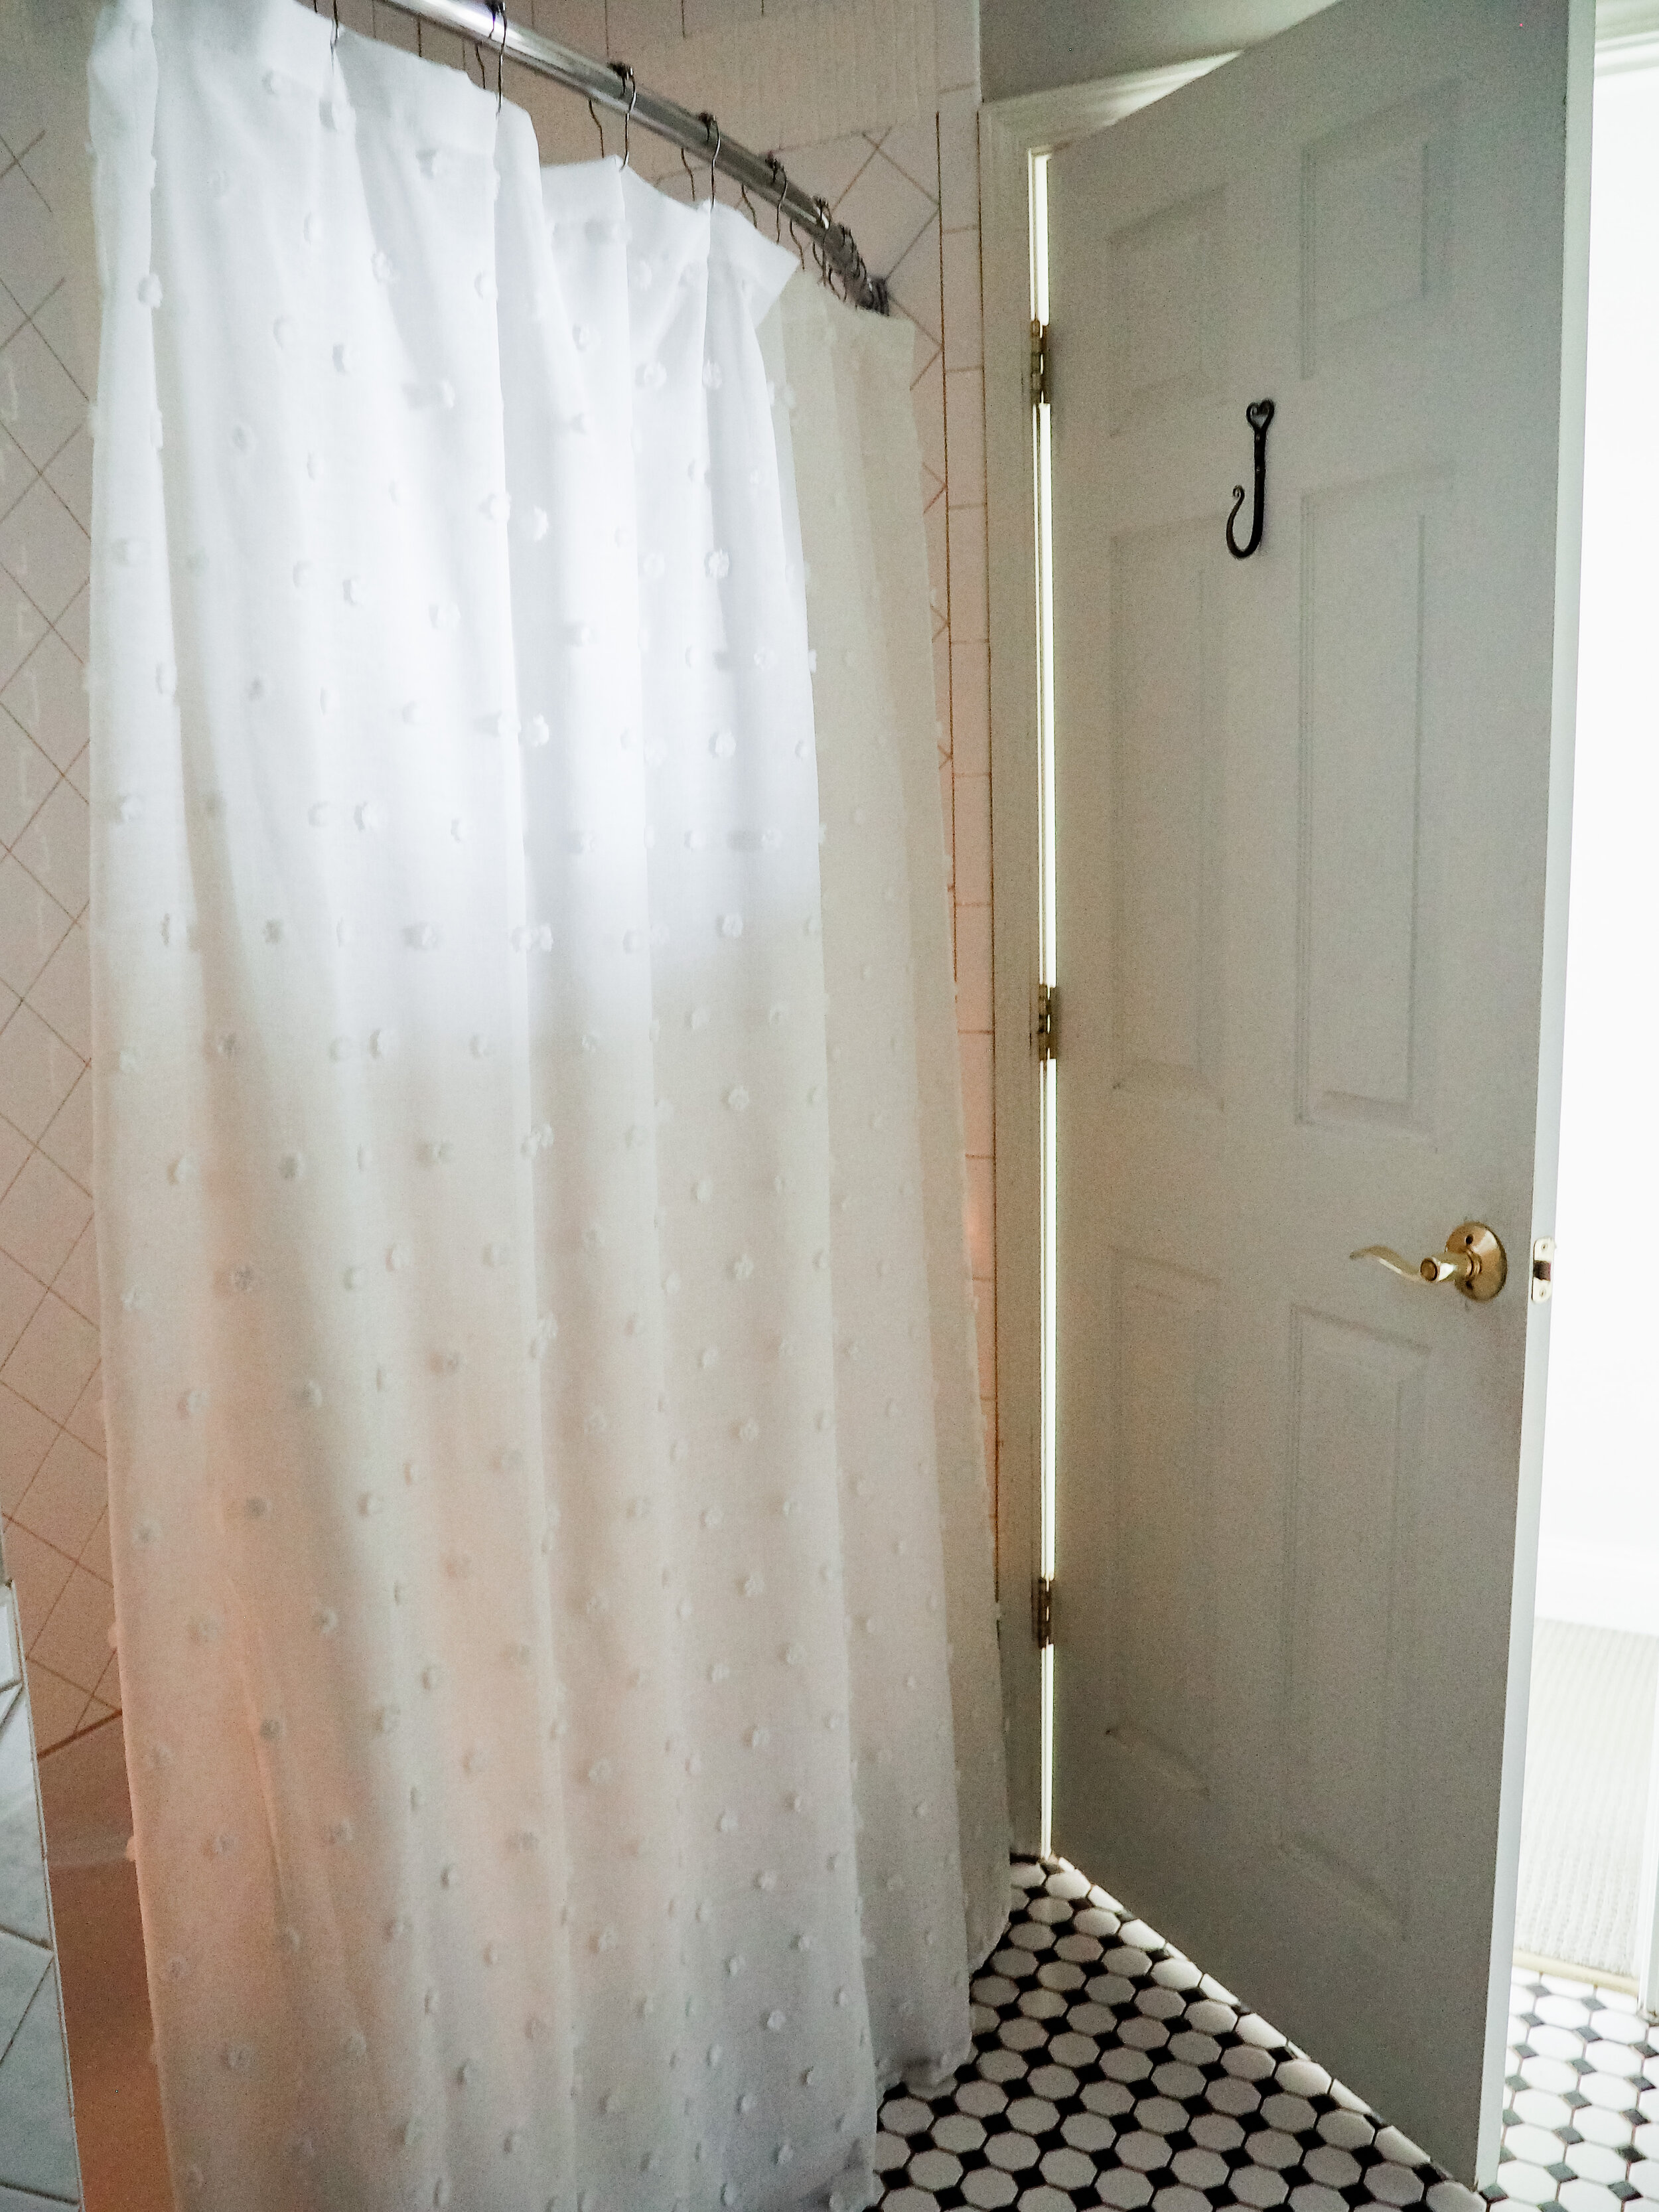 A cute and fresh shower curtain